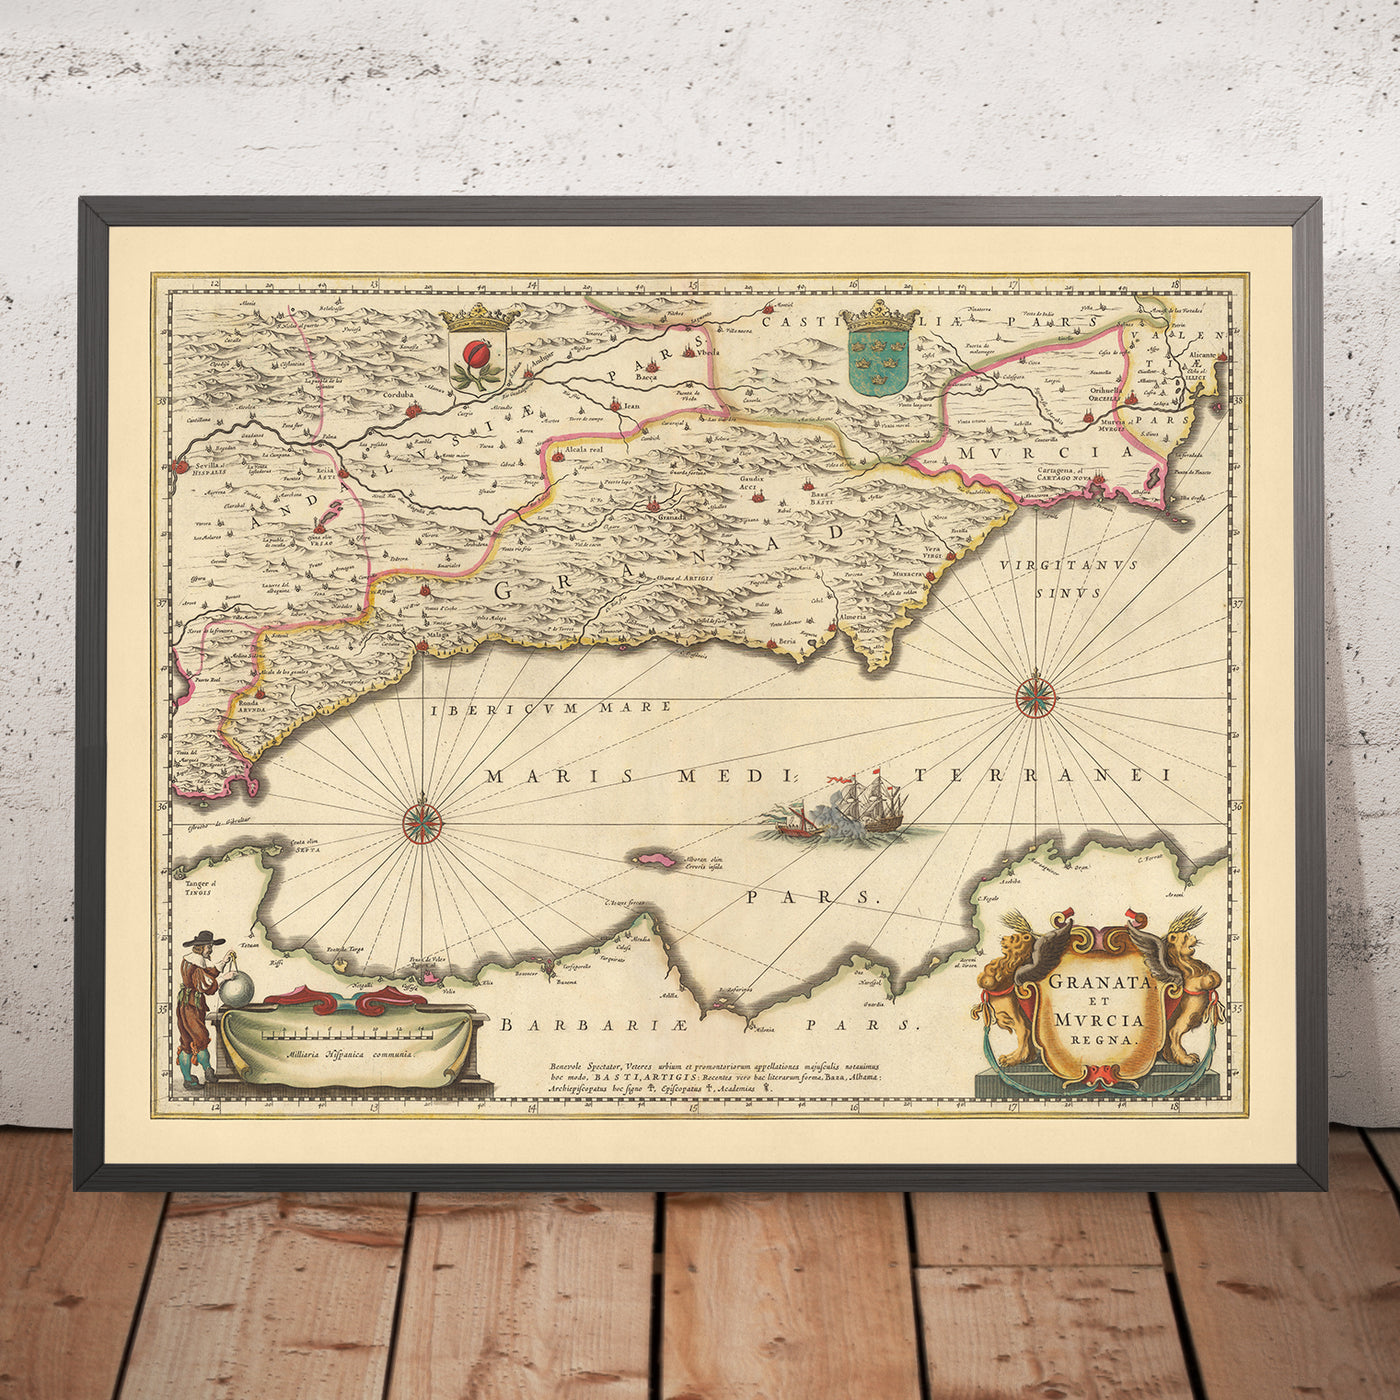 Ancienne carte des royaumes de Grenade et de Murcie, Espagne par Visscher, 1690 : Málaga, Gibraltar, Séville, Murcie, Tanger